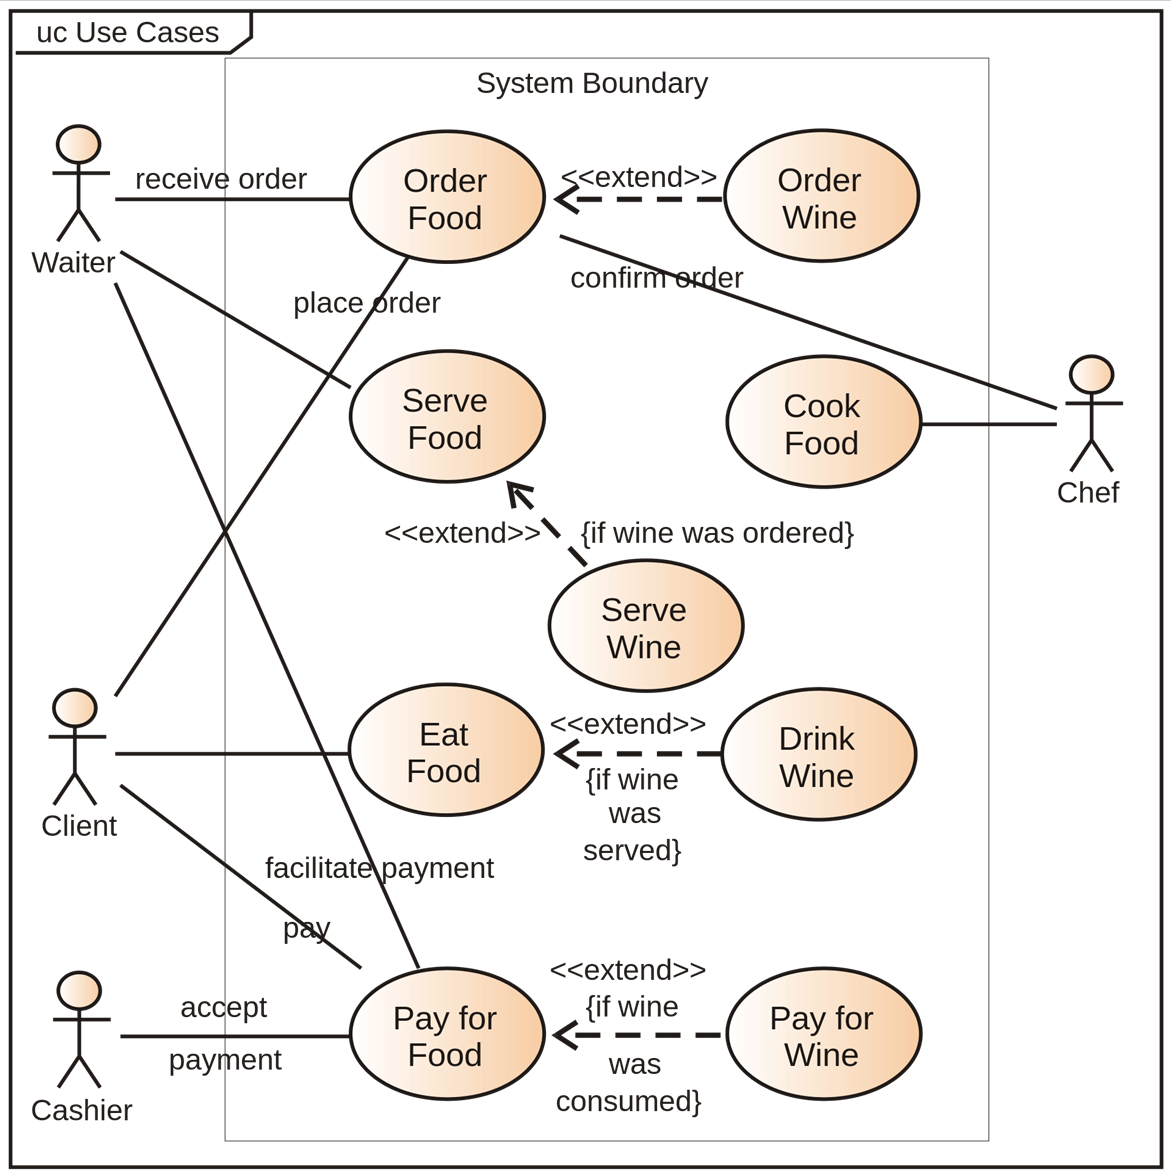 A use case diagram